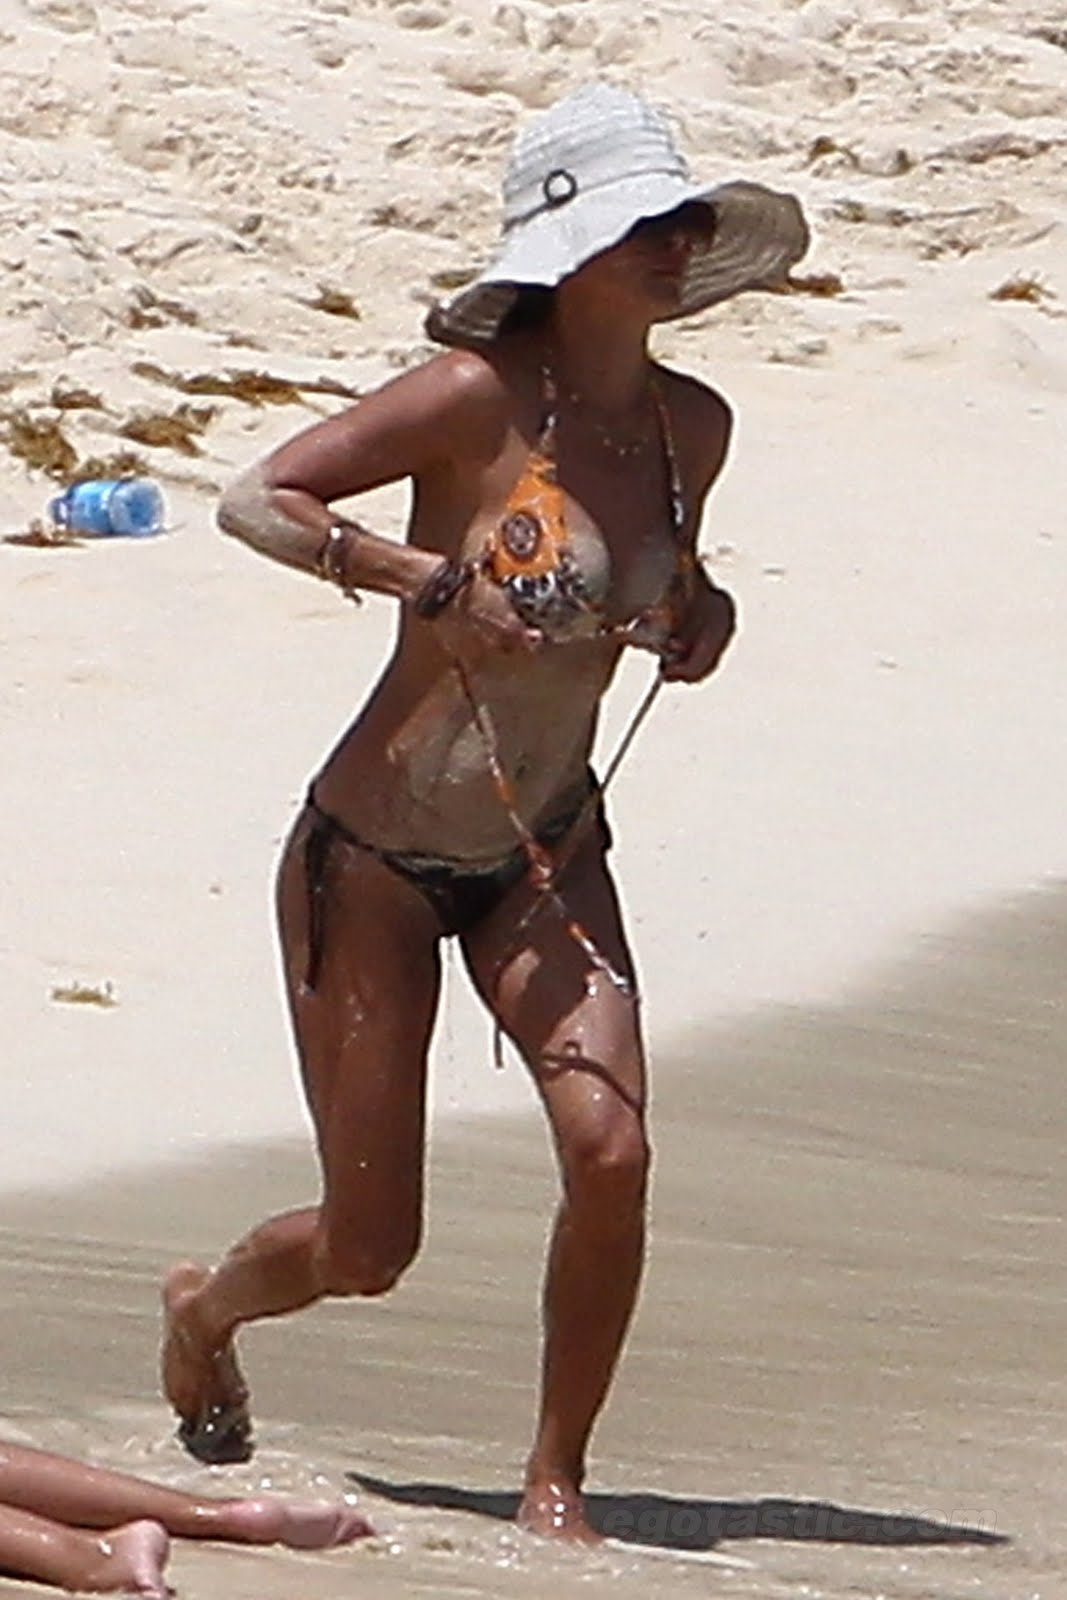 http://4.bp.blogspot.com/-_L50wUMenoI/TkVdQPKk6KI/AAAAAAAAFt8/vgbMsA-0wfU/s1600/brooke-burke-bikini-beach-france-08.jpg